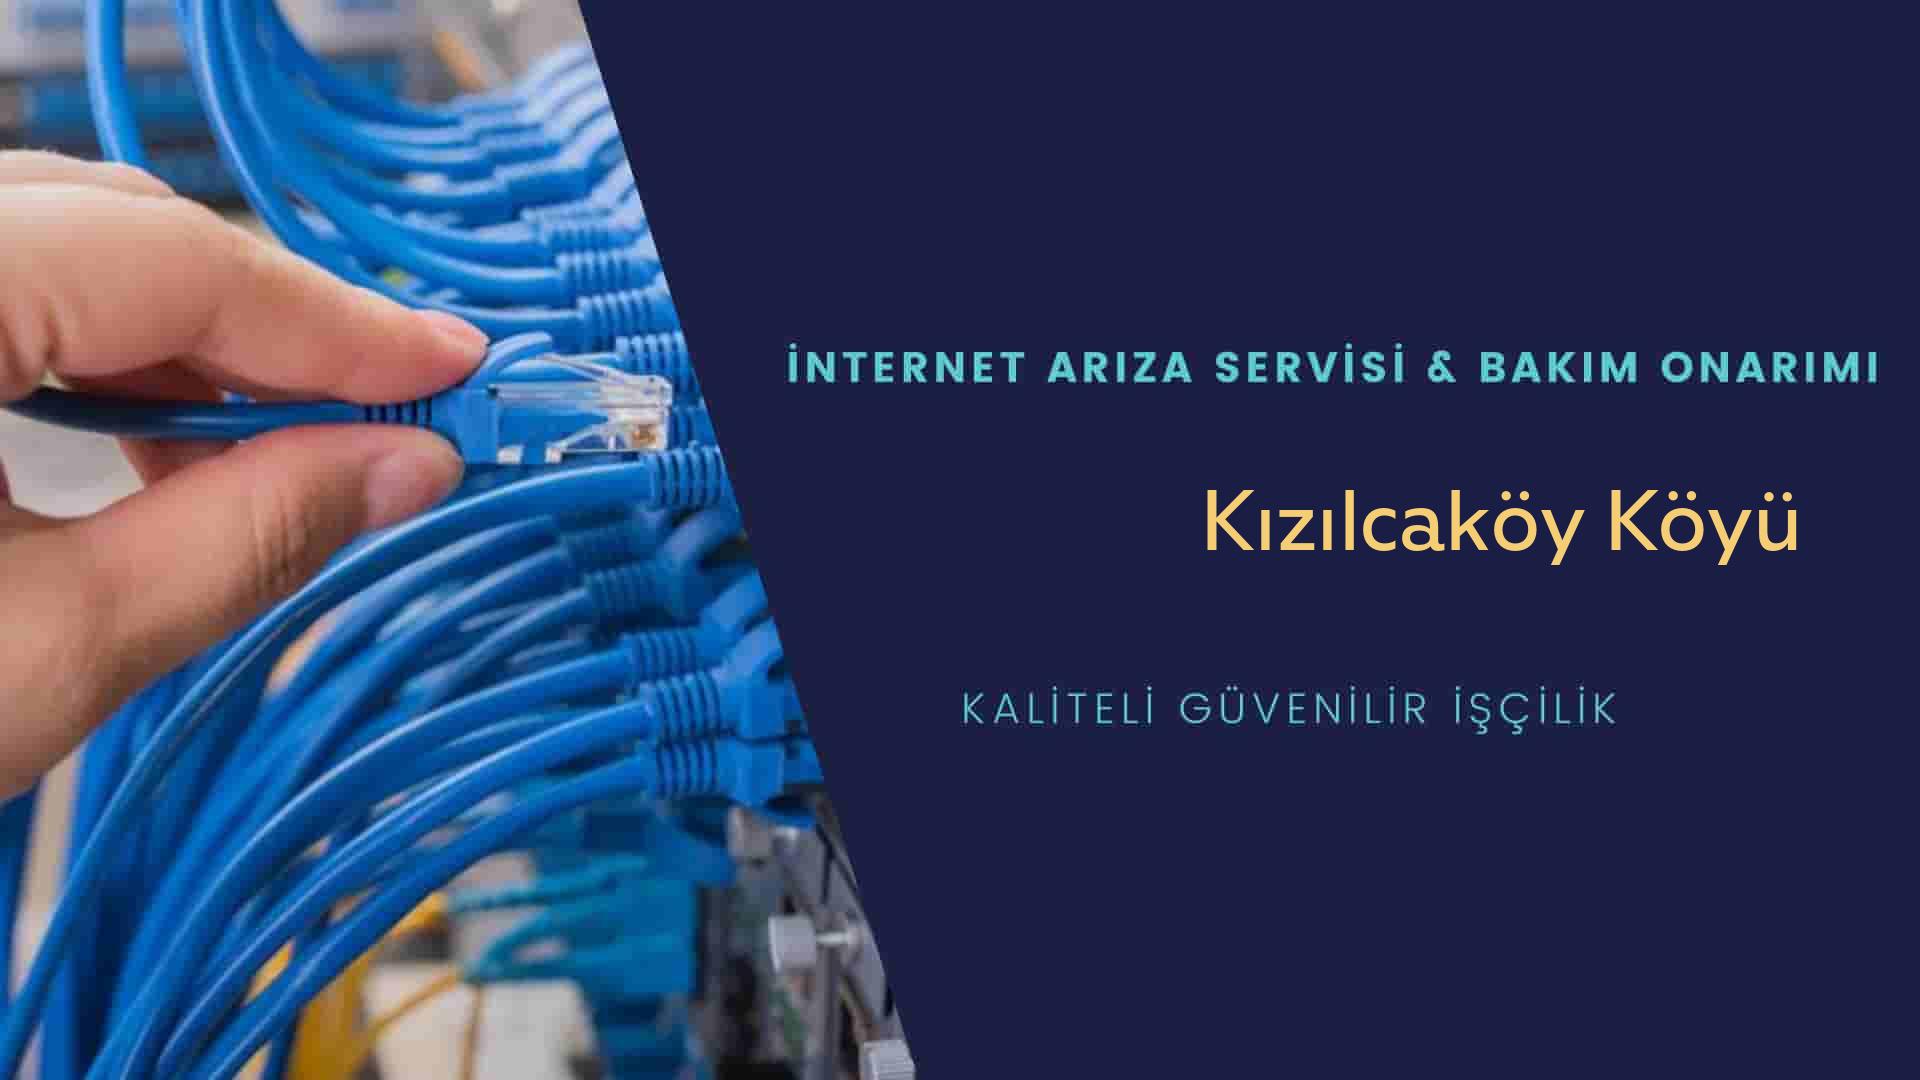 Kızılcaköy Köyü internet kablosu çekimi yapan yerler veya elektrikçiler mi? arıyorsunuz doğru yerdesiniz o zaman sizlere 7/24 yardımcı olacak profesyonel ustalarımız bir telefon kadar yakındır size.